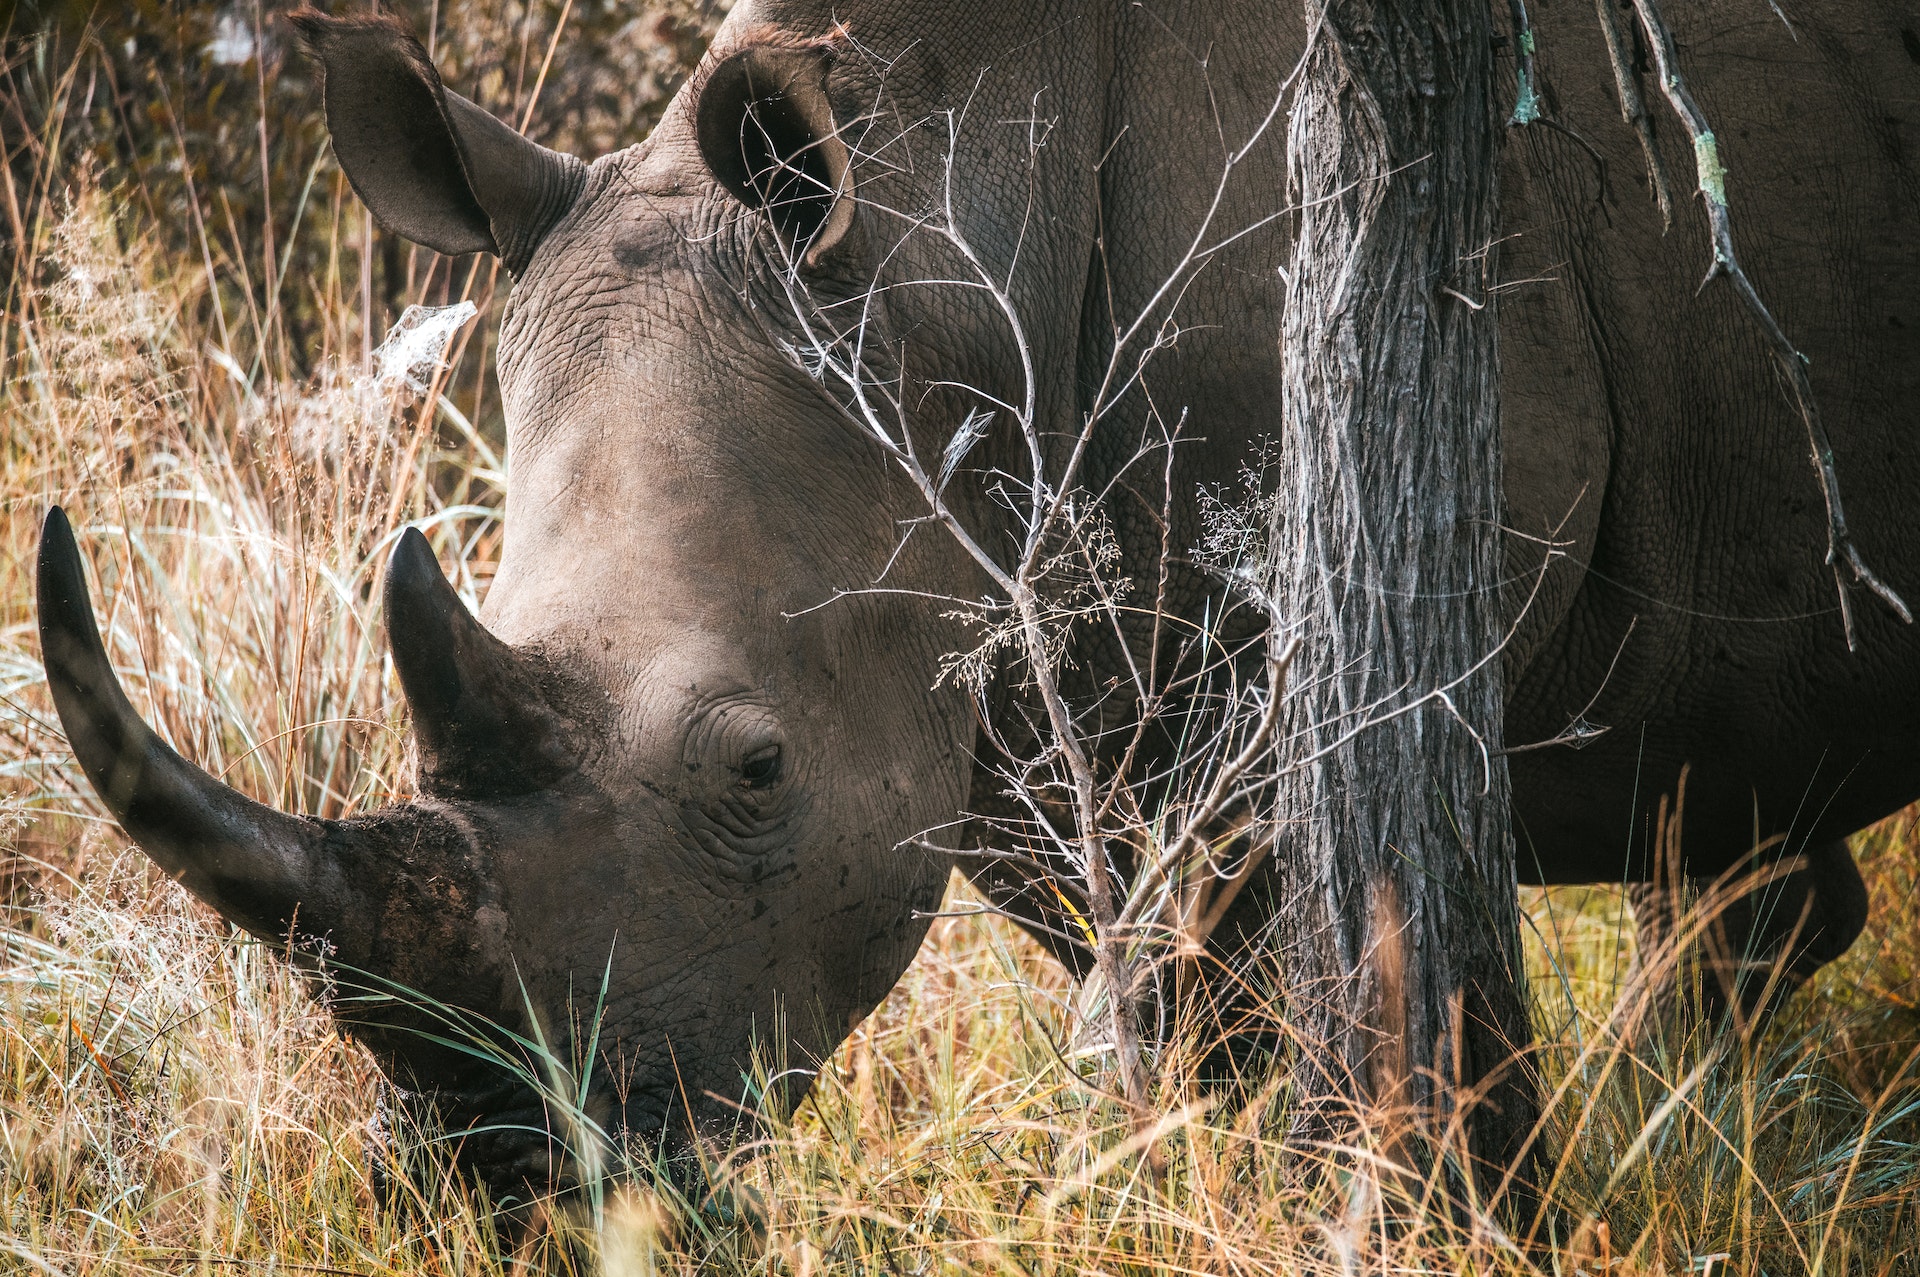 Closeup of a rhino in the wild 